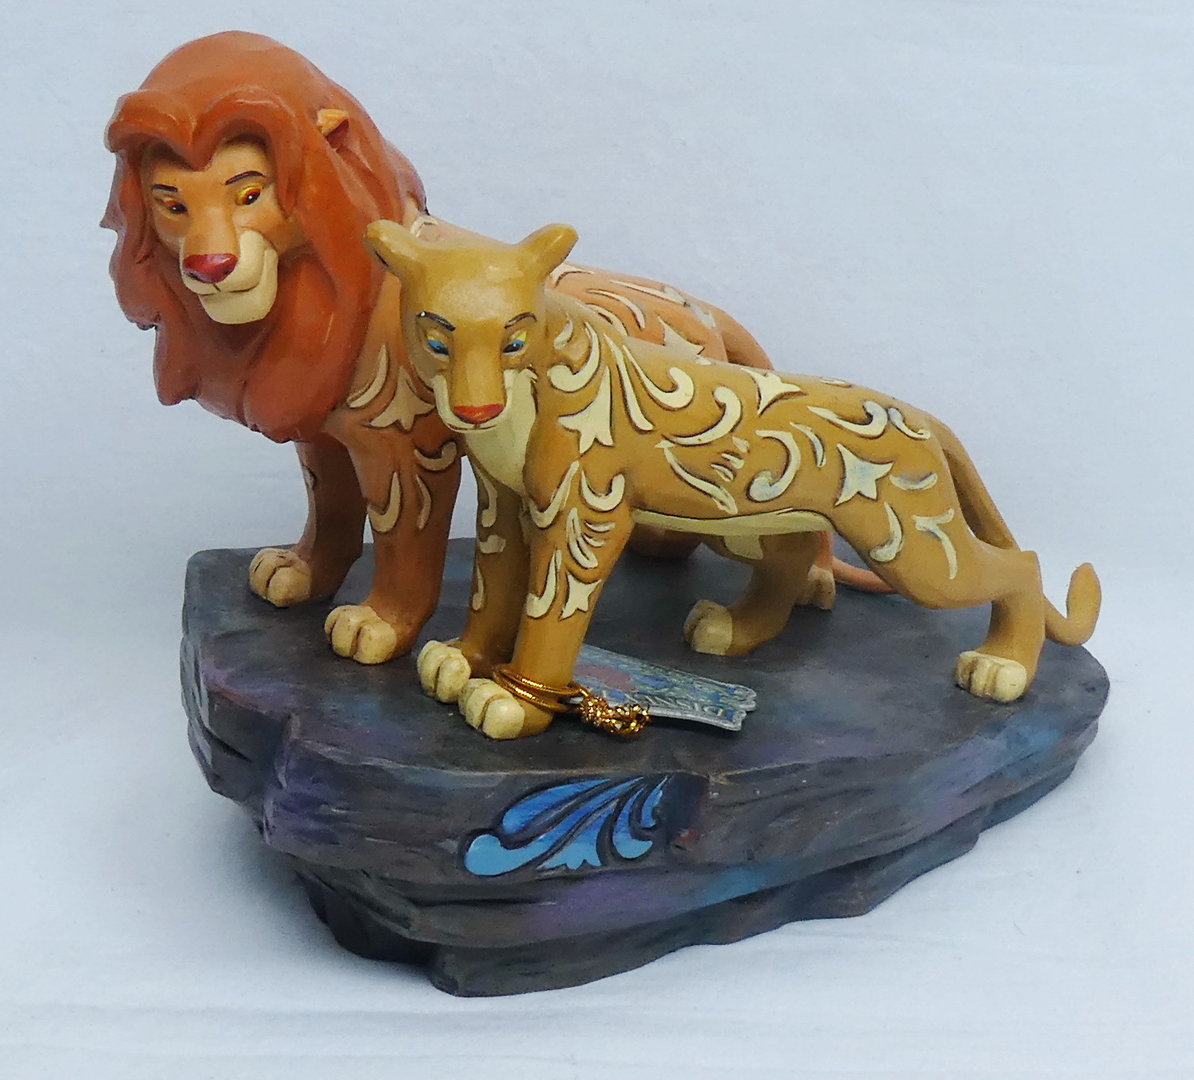 Disney Figur enesco Shore Traditions 4040432 Simba Nla König der Löwen Pride Roc